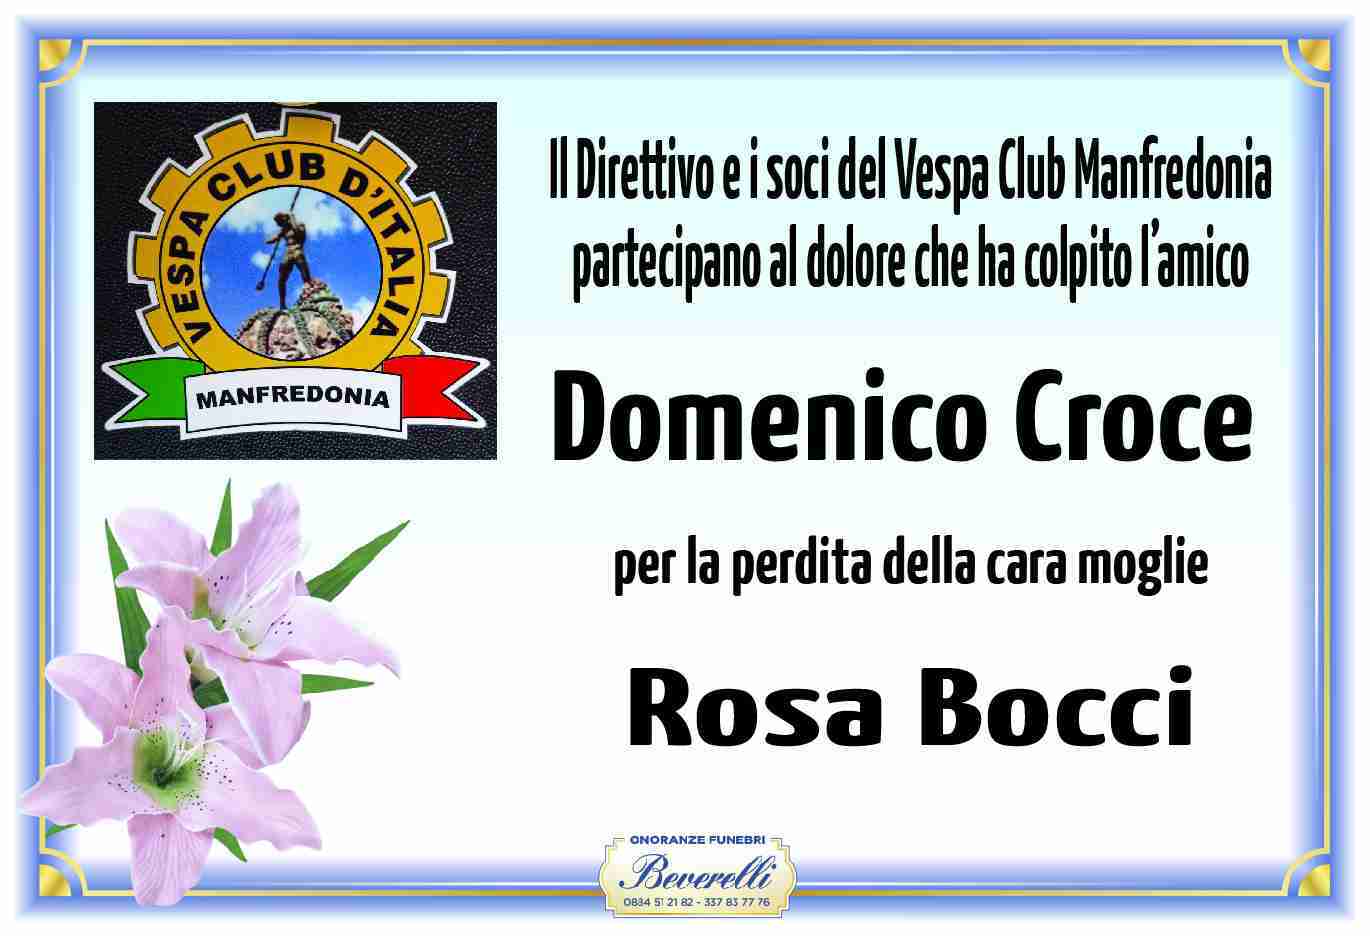 Rosa Bocci